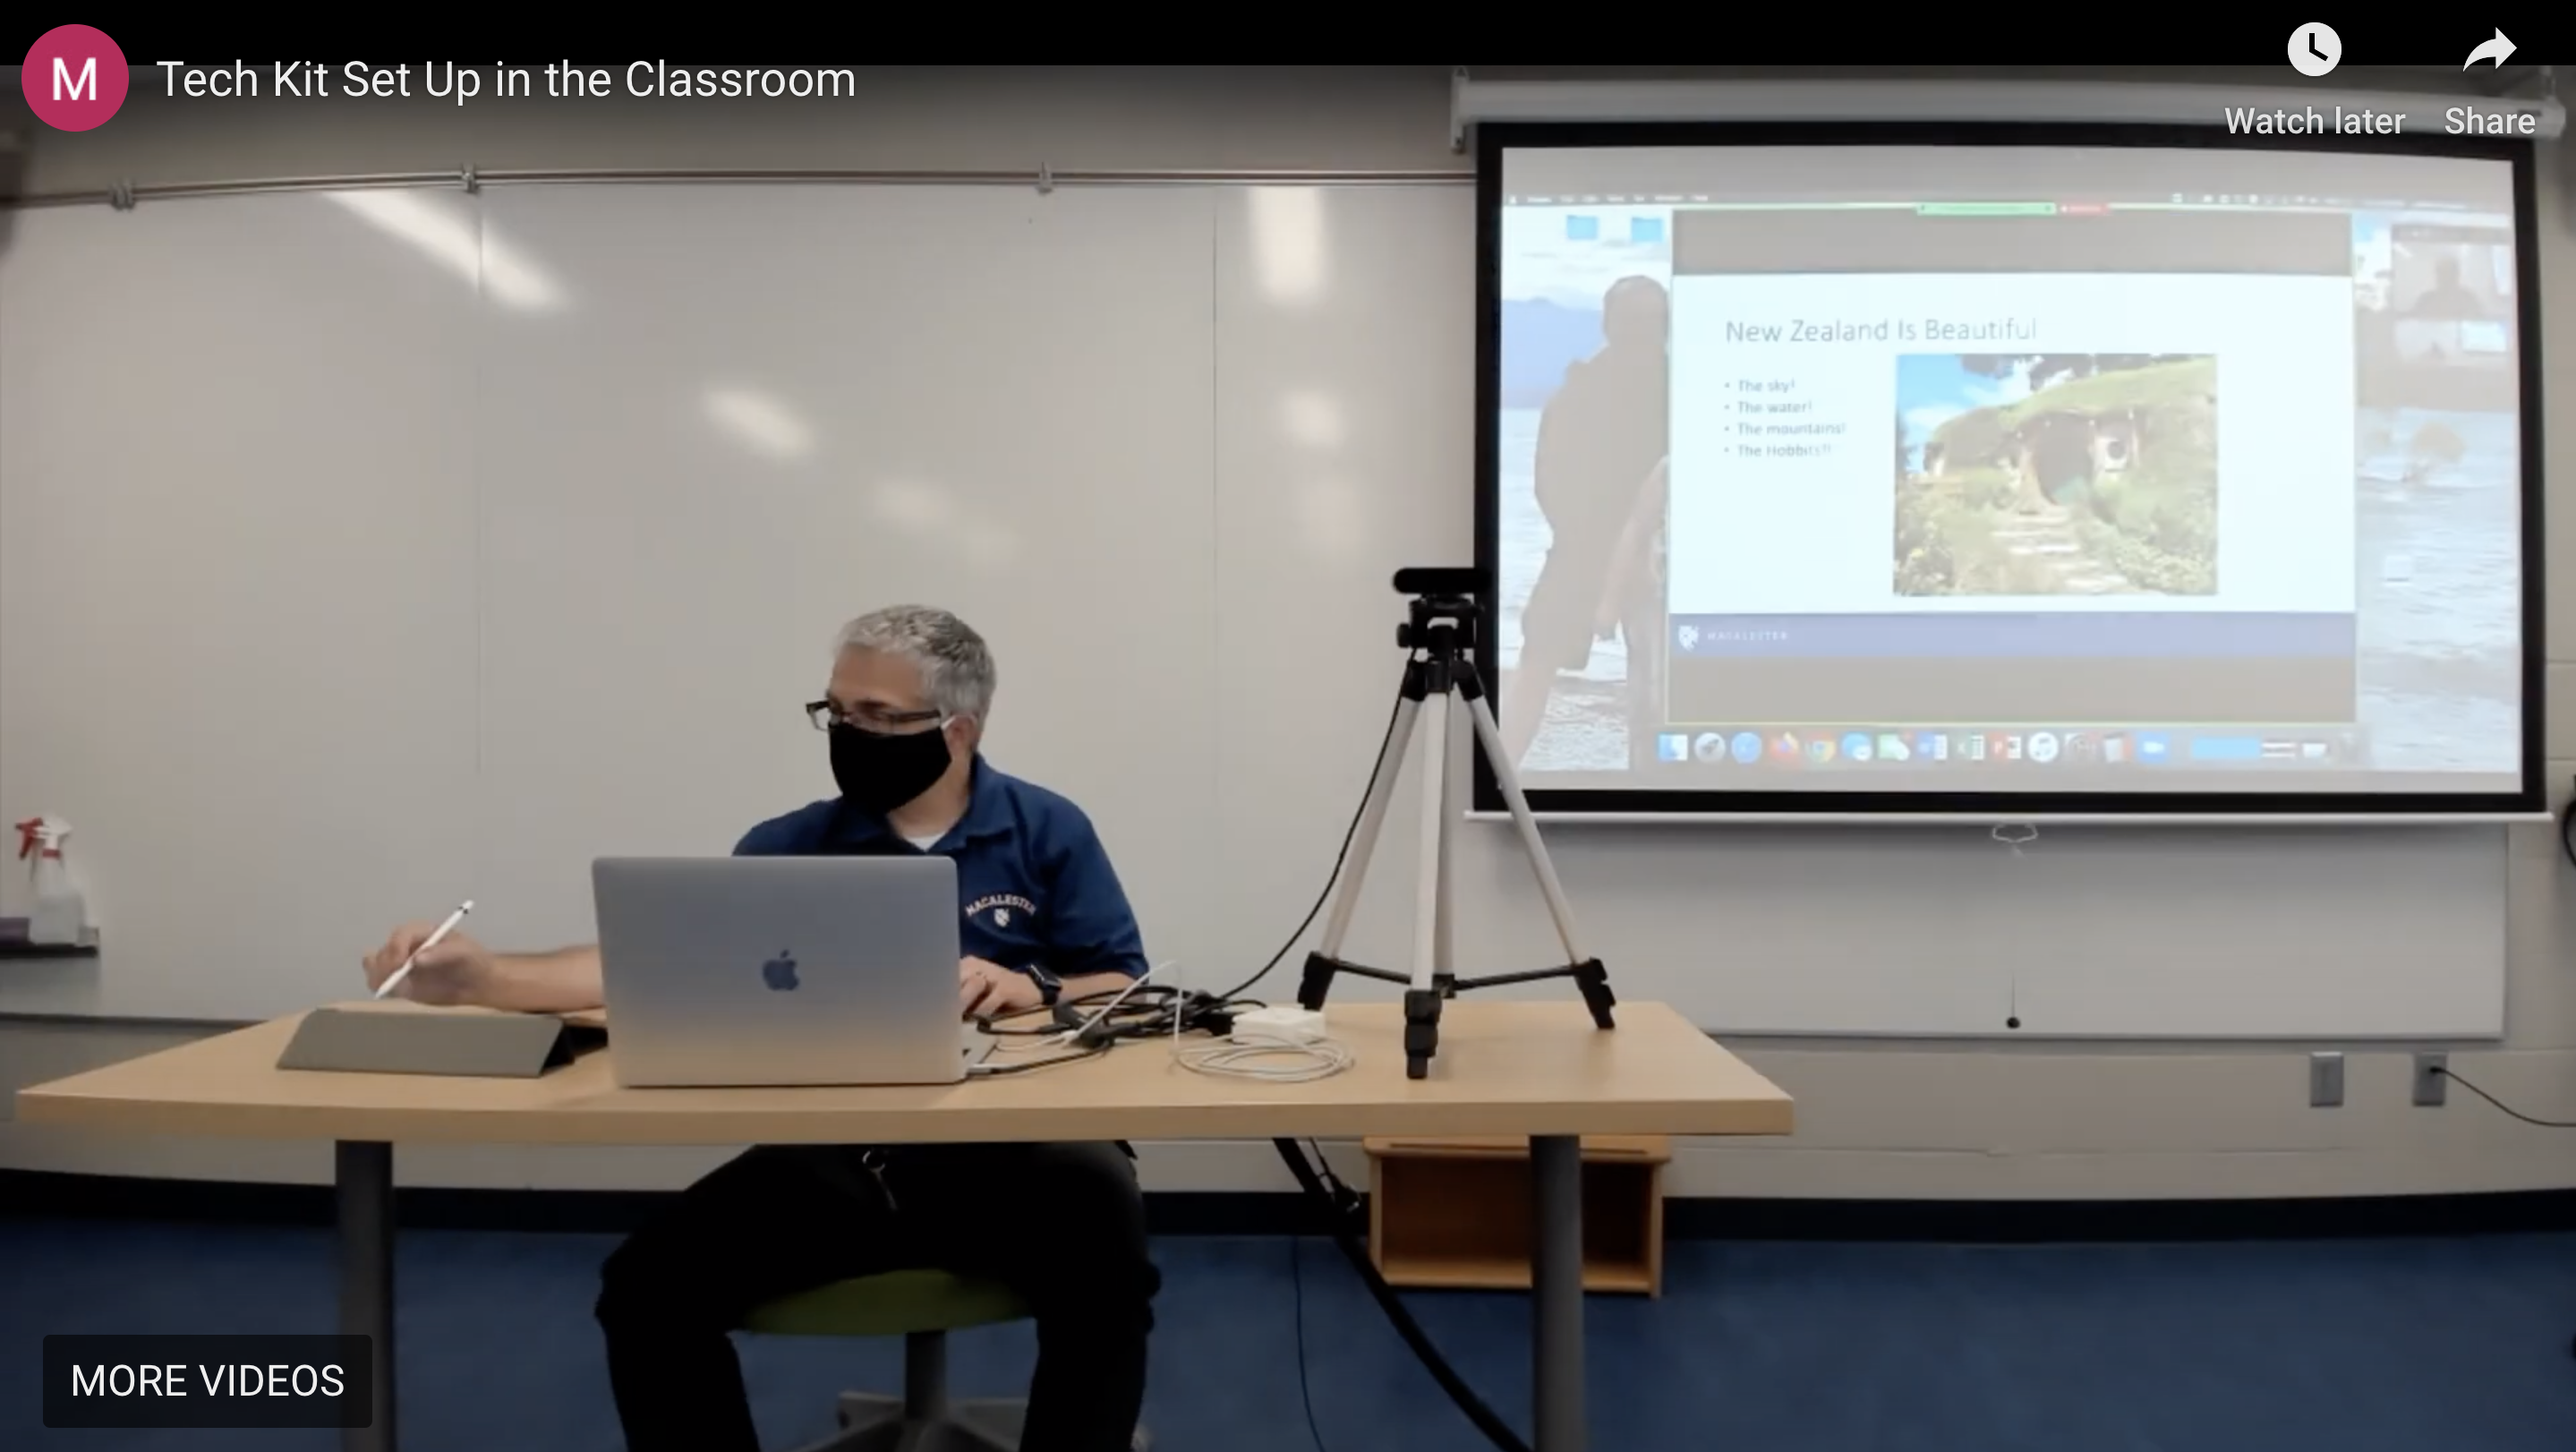 Jeff using iPad as whiteboard in classroom